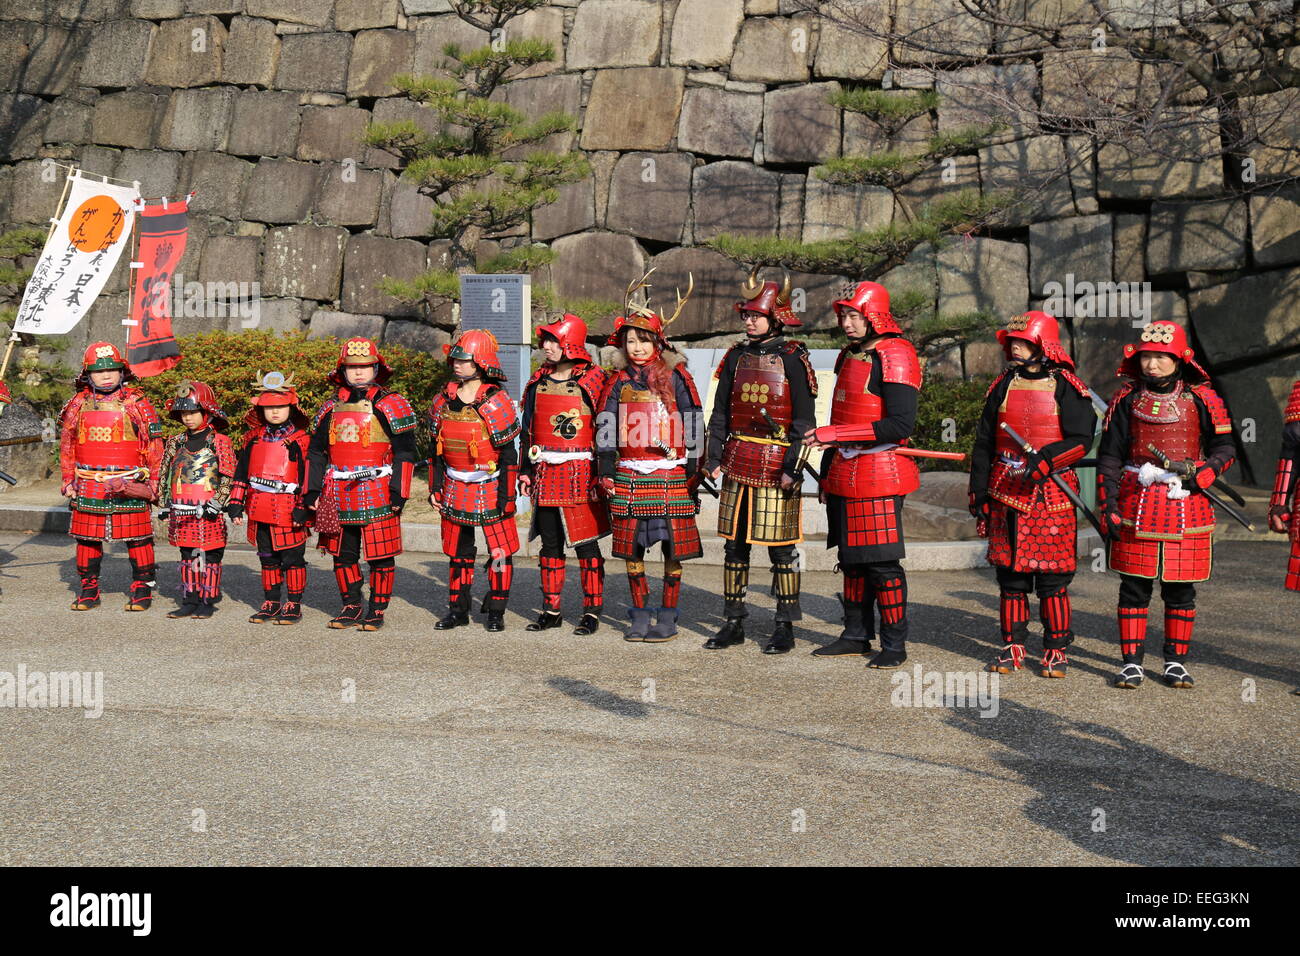 Cette image des Japonais habillés comme des samouraïs a été capturé à l'extérieur du Château d'Osaka au Japon en janvier 2015. Banque D'Images